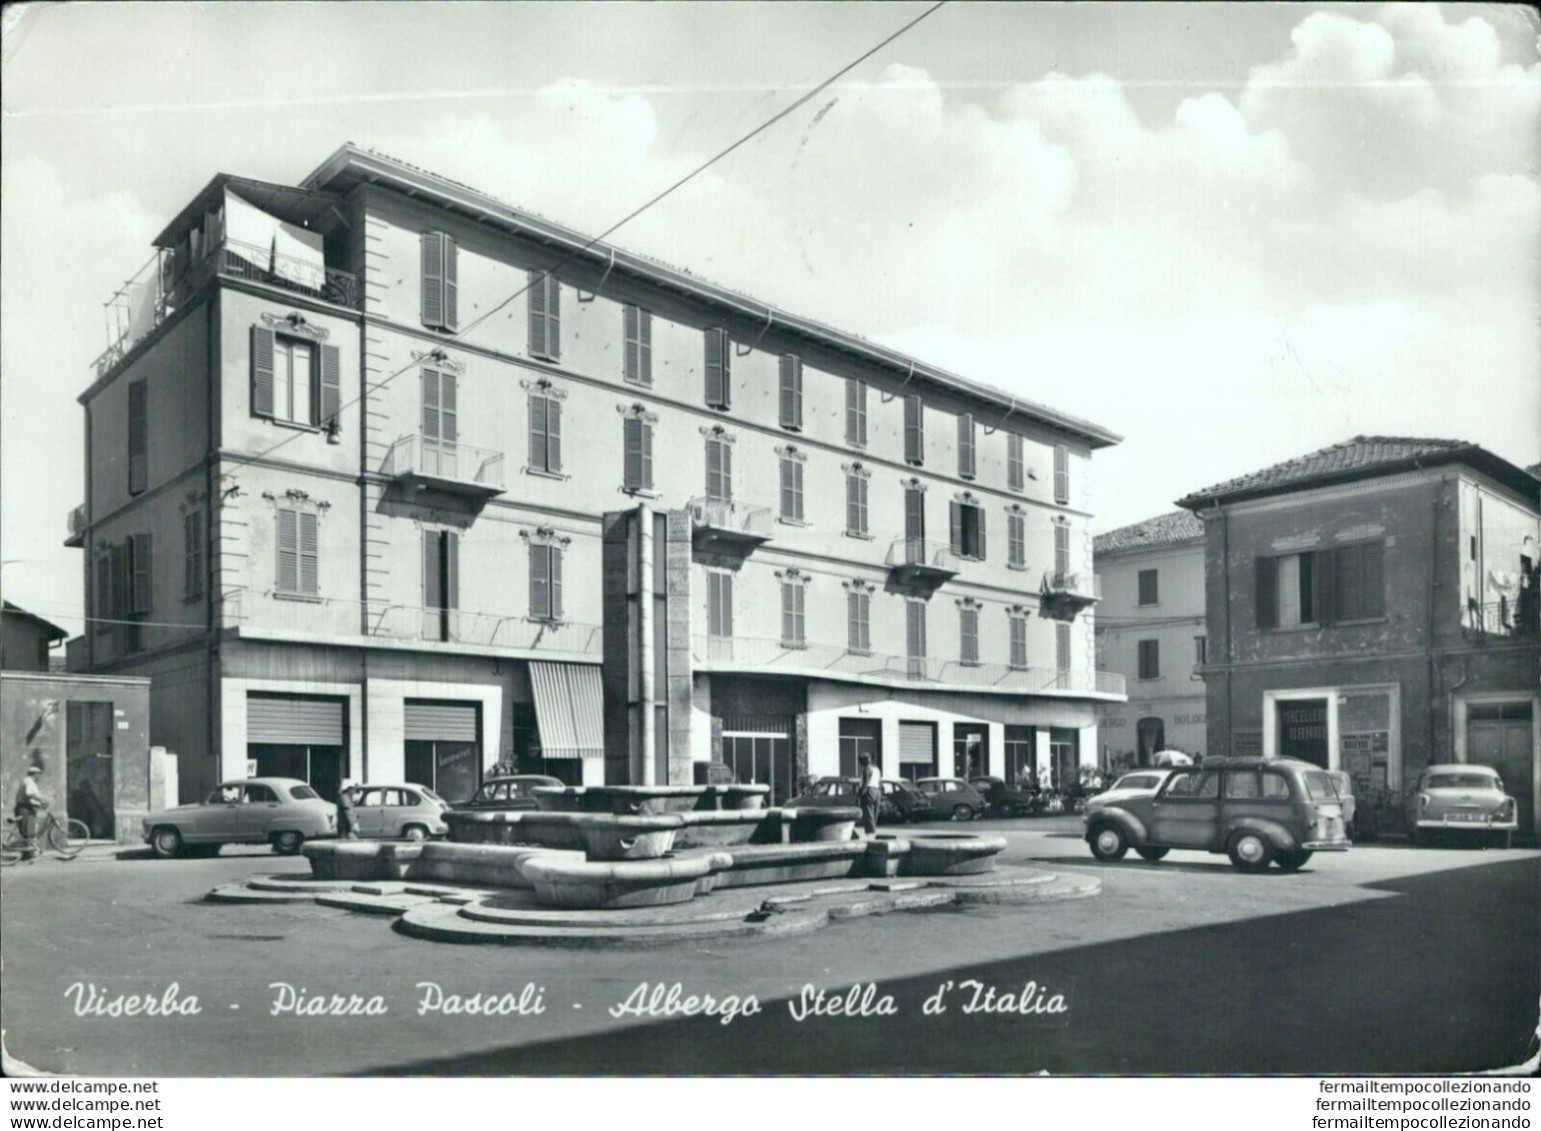 Bb414 Cartolina Viserba Piazza Pascoli Albergo Stella D'italia Rimini - Rimini